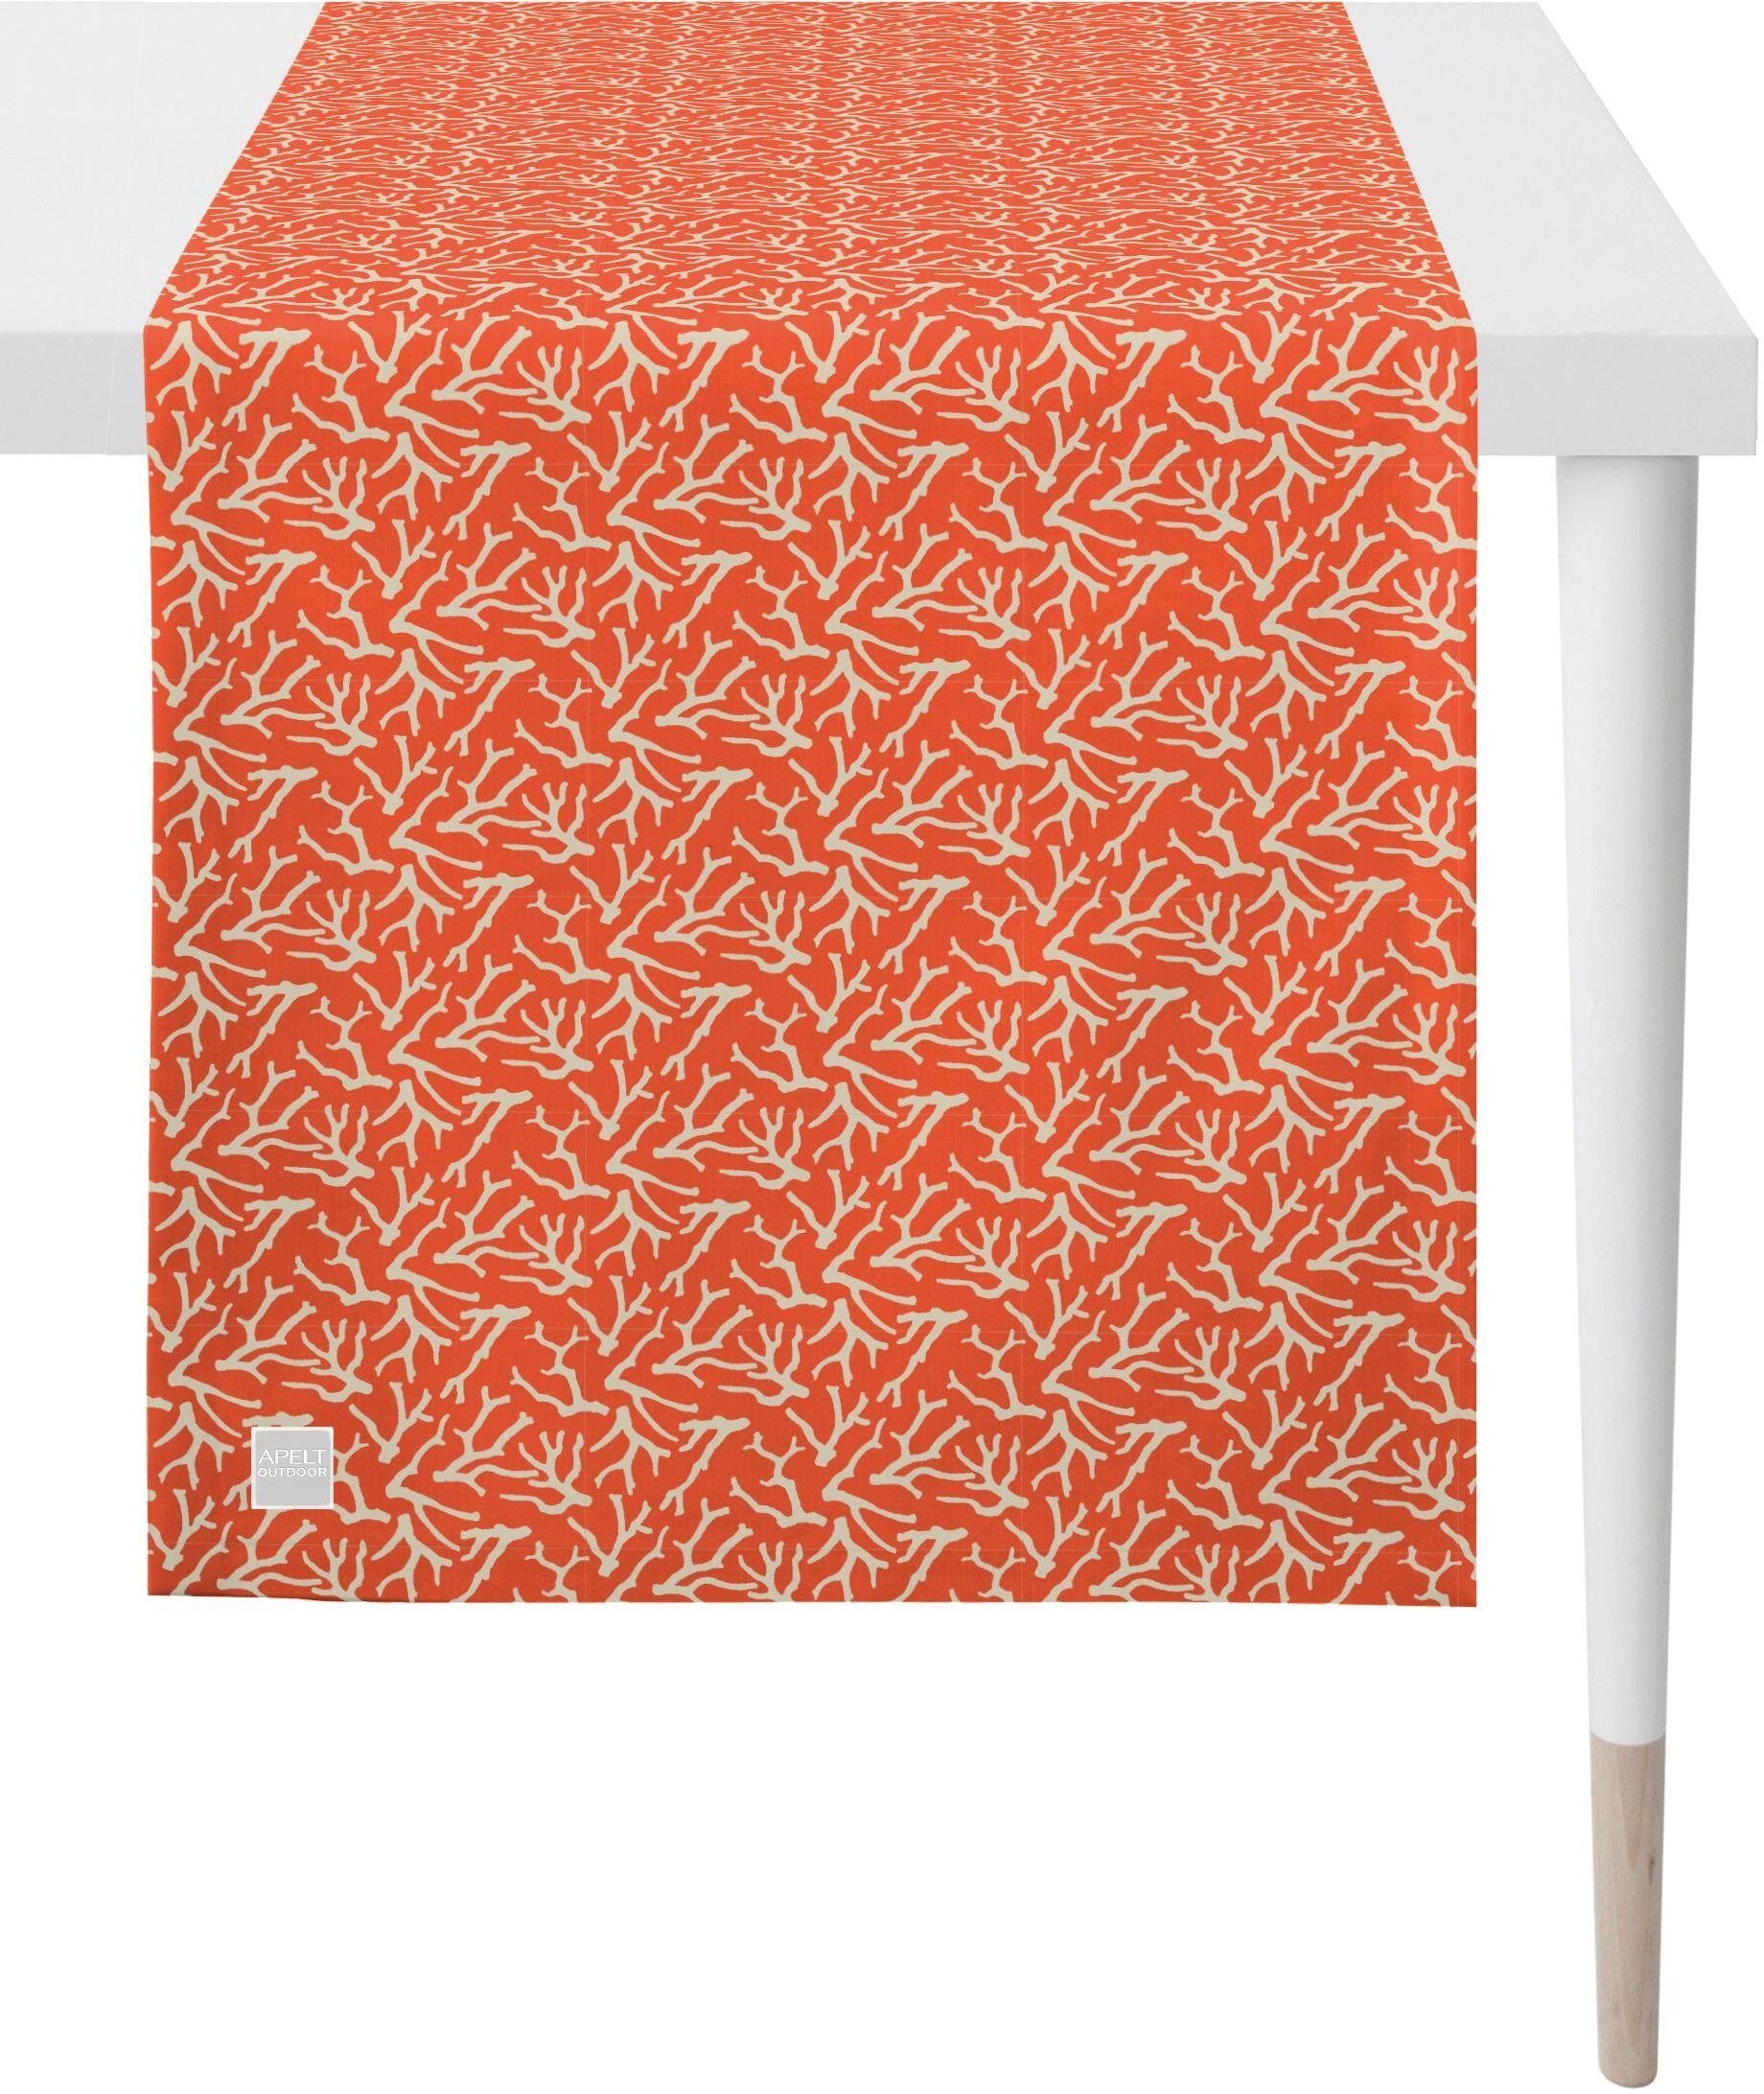 APELT Sommer Tischläufer orange/sand Sommerdeko, 3970 Outdoor, (1-tlg), Jacquardgewebe